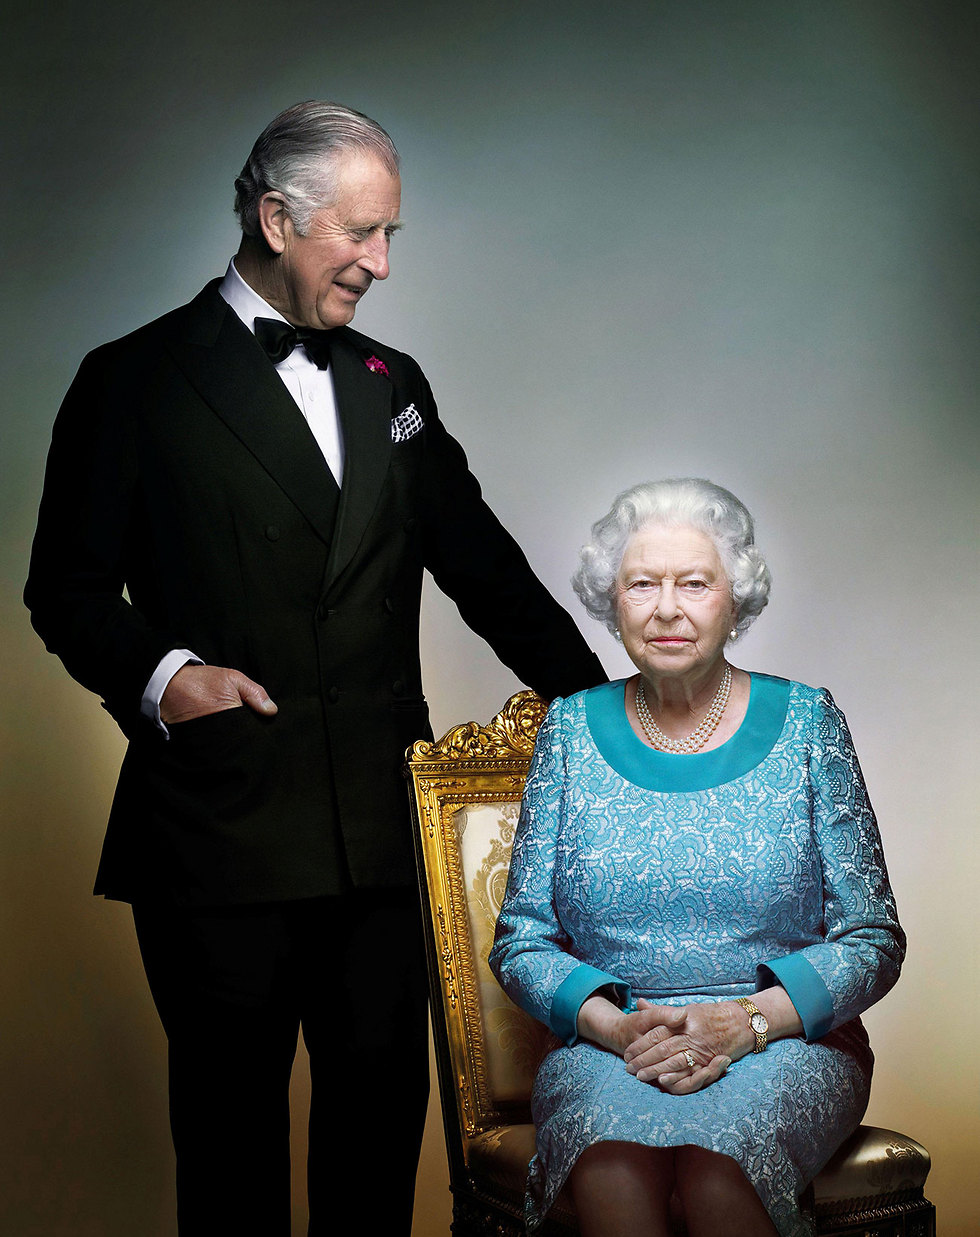 "תשתף בעבודתה את בני משפחה". המלכה אליזבת עם יורש העצר צ'ארלס  (צילום: רויטרס) (צילום: רויטרס)